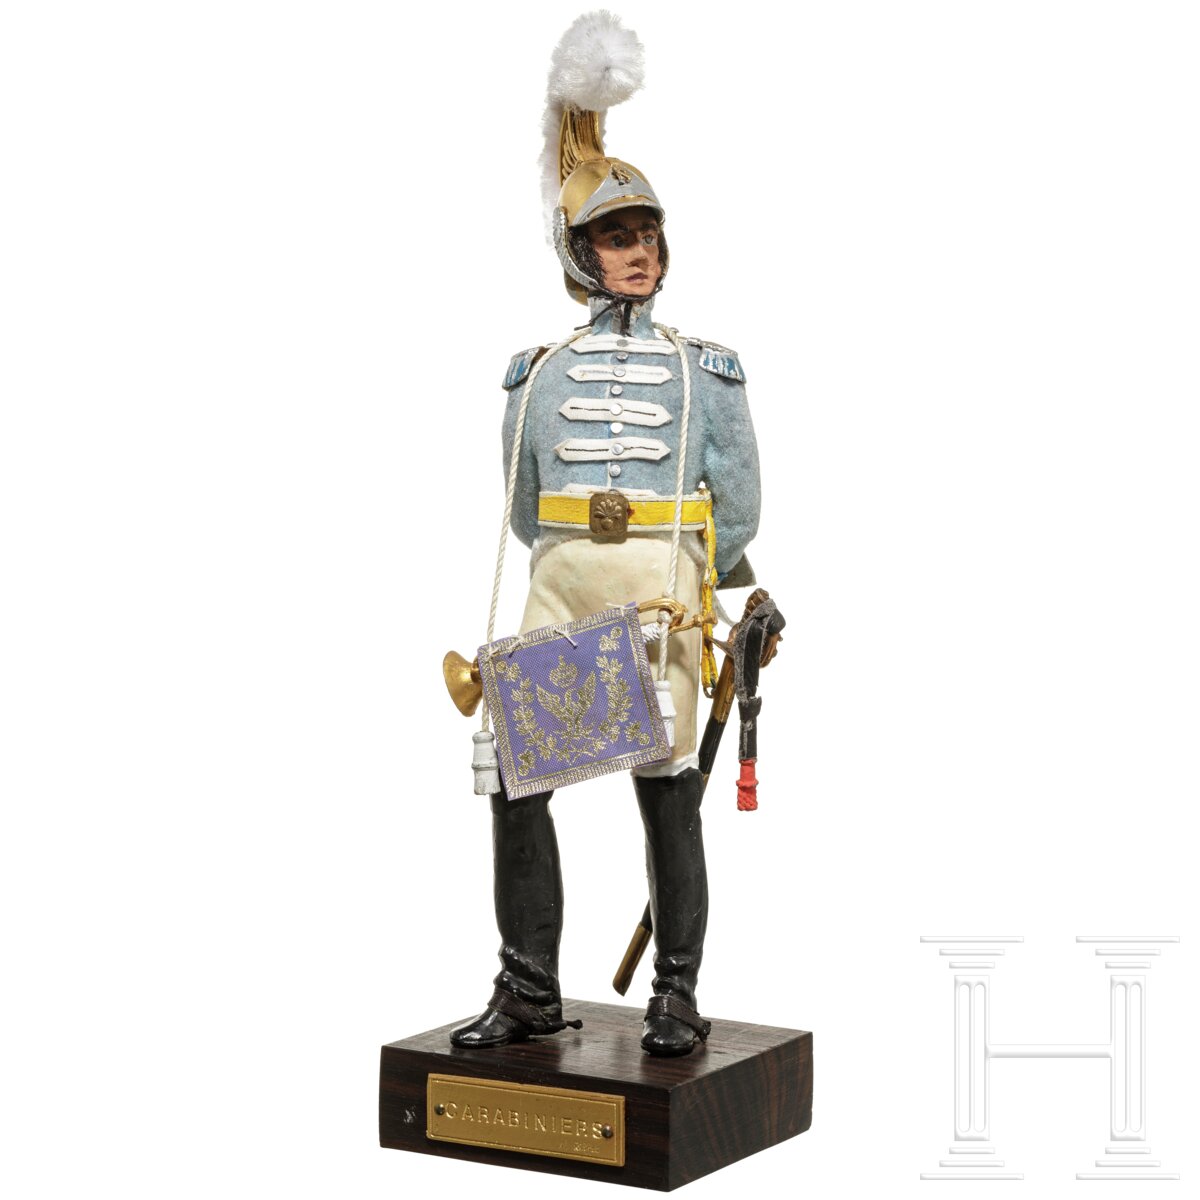 Trompeter der Carabiniers um 1811 - Uniformfigur von Marcel Riffet, 20. Jhdt. - Image 2 of 6